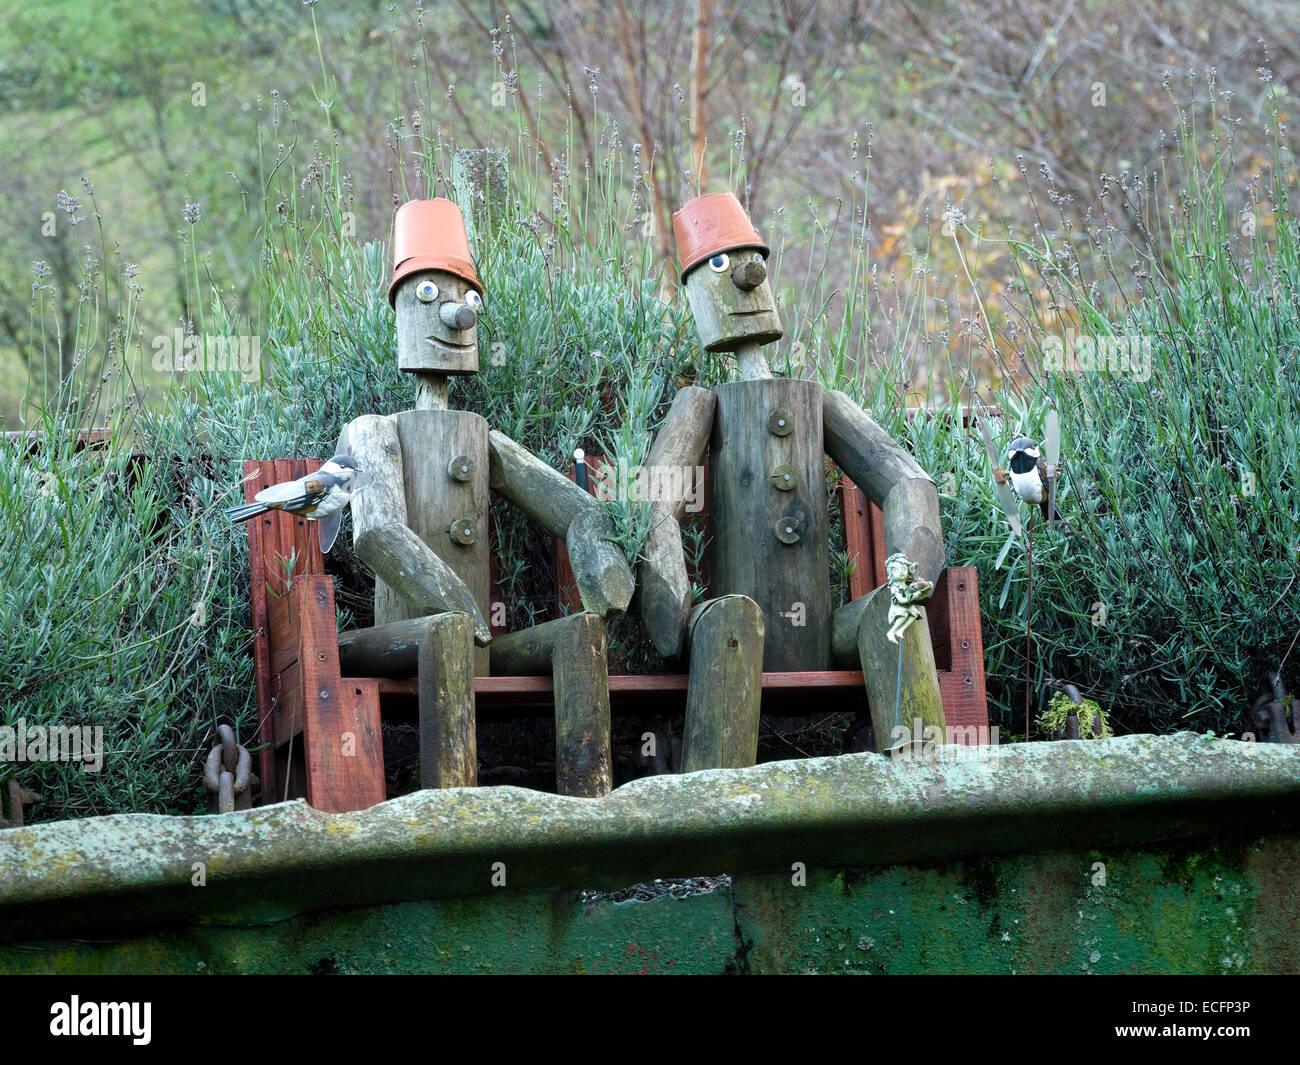 Modelos de madera de Bill y Ben Maceta hombres sentados en un banco en el jardín. Foto de stock